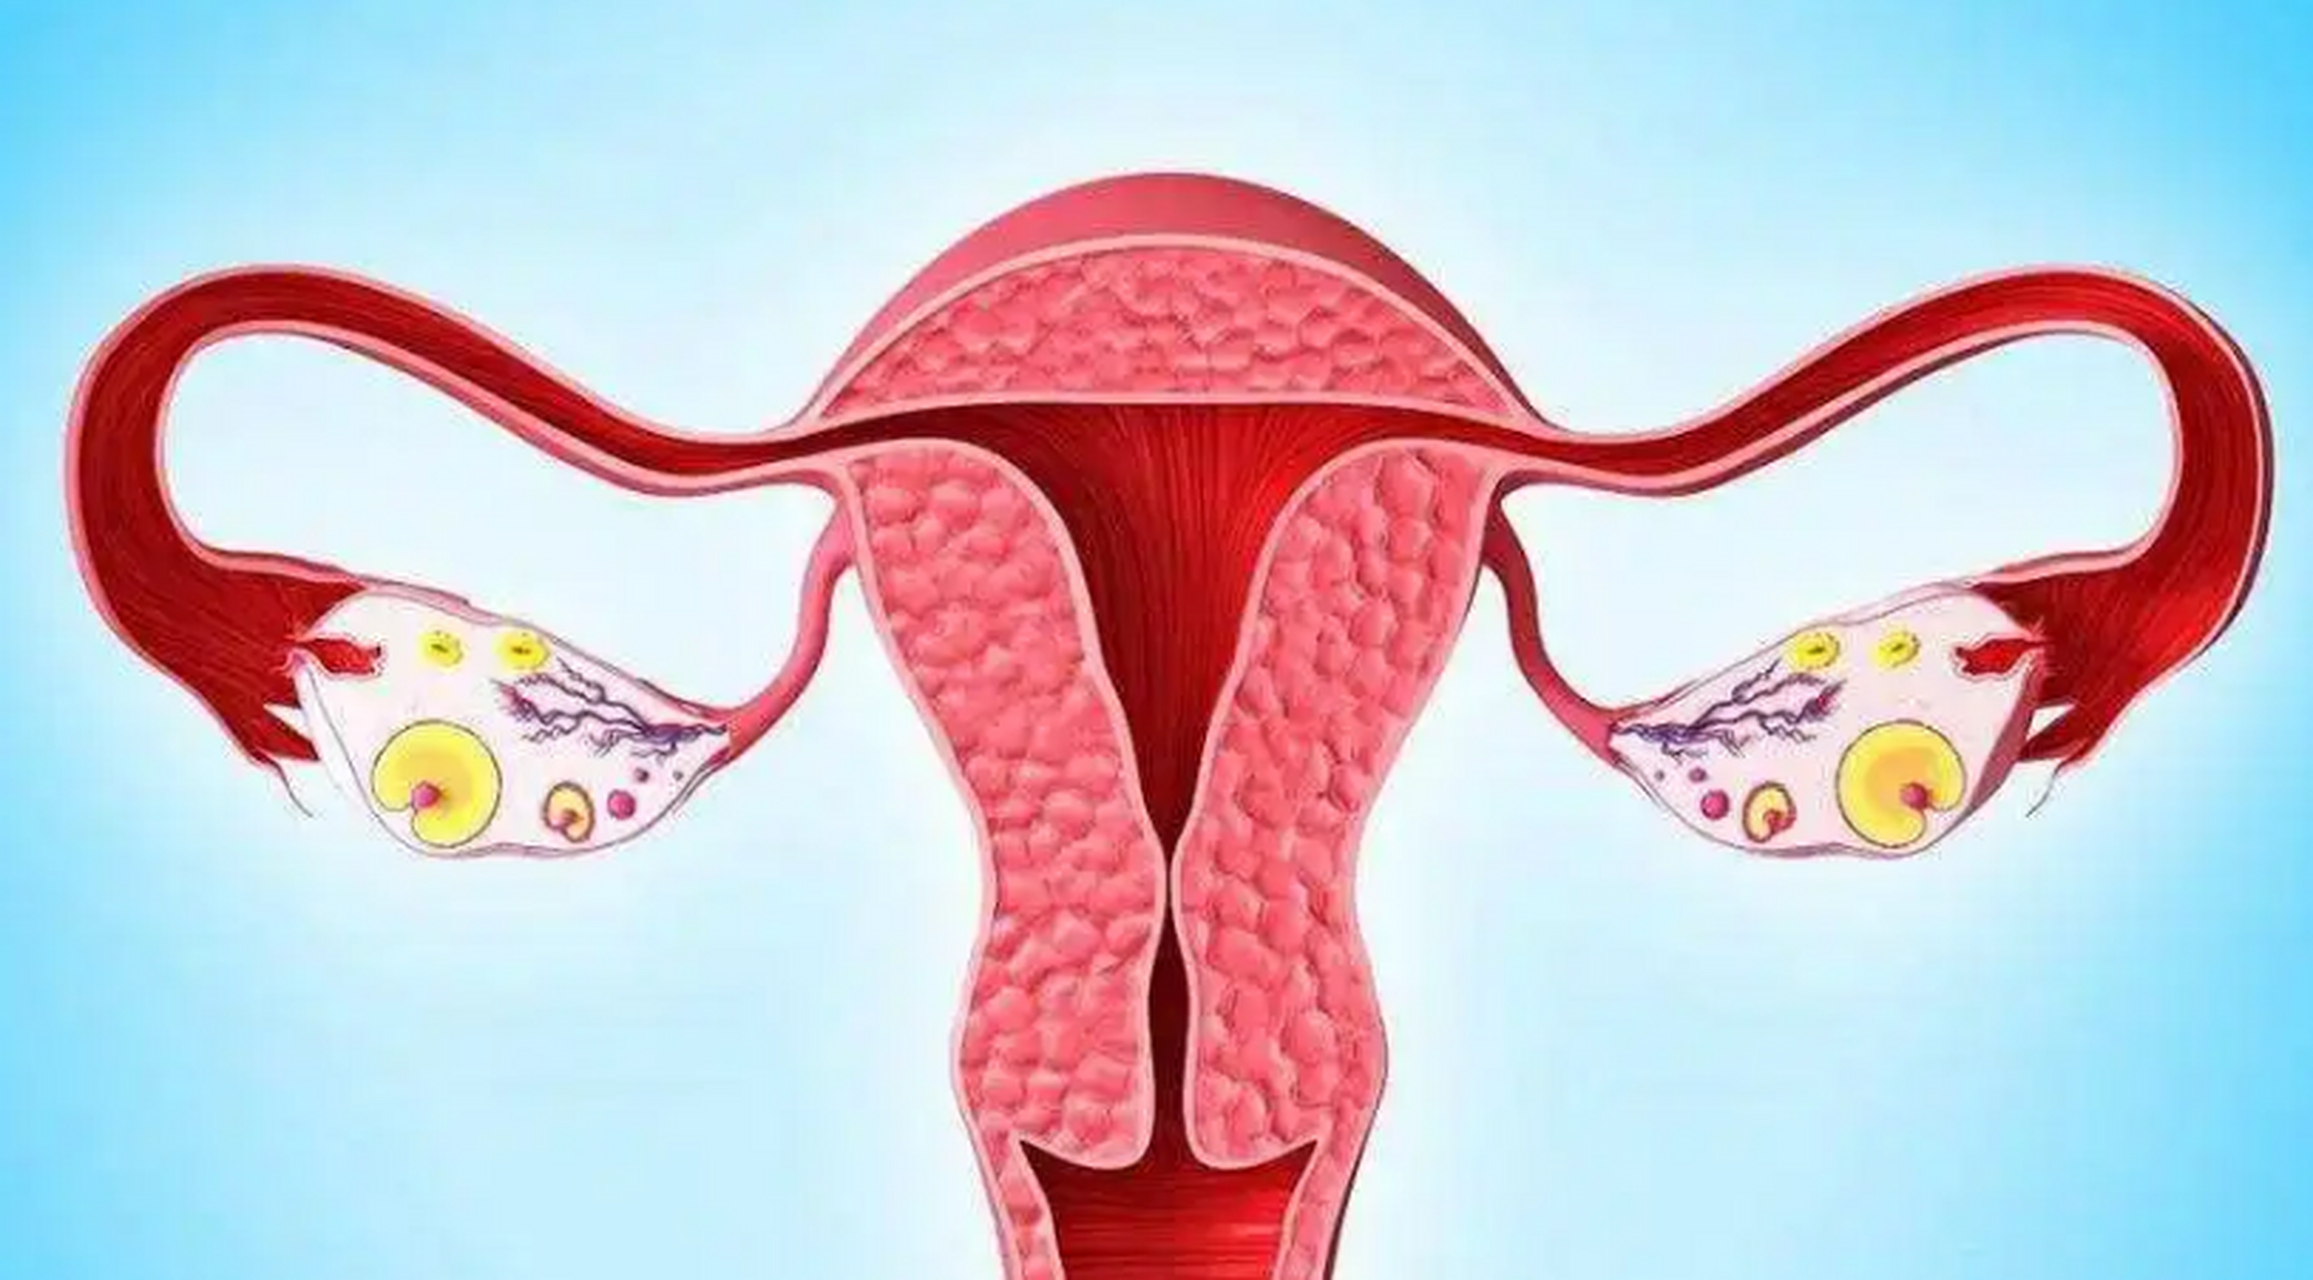 生活中不少女性体检时都会遇到类似问题,当医生告知自己存在宫颈肥大